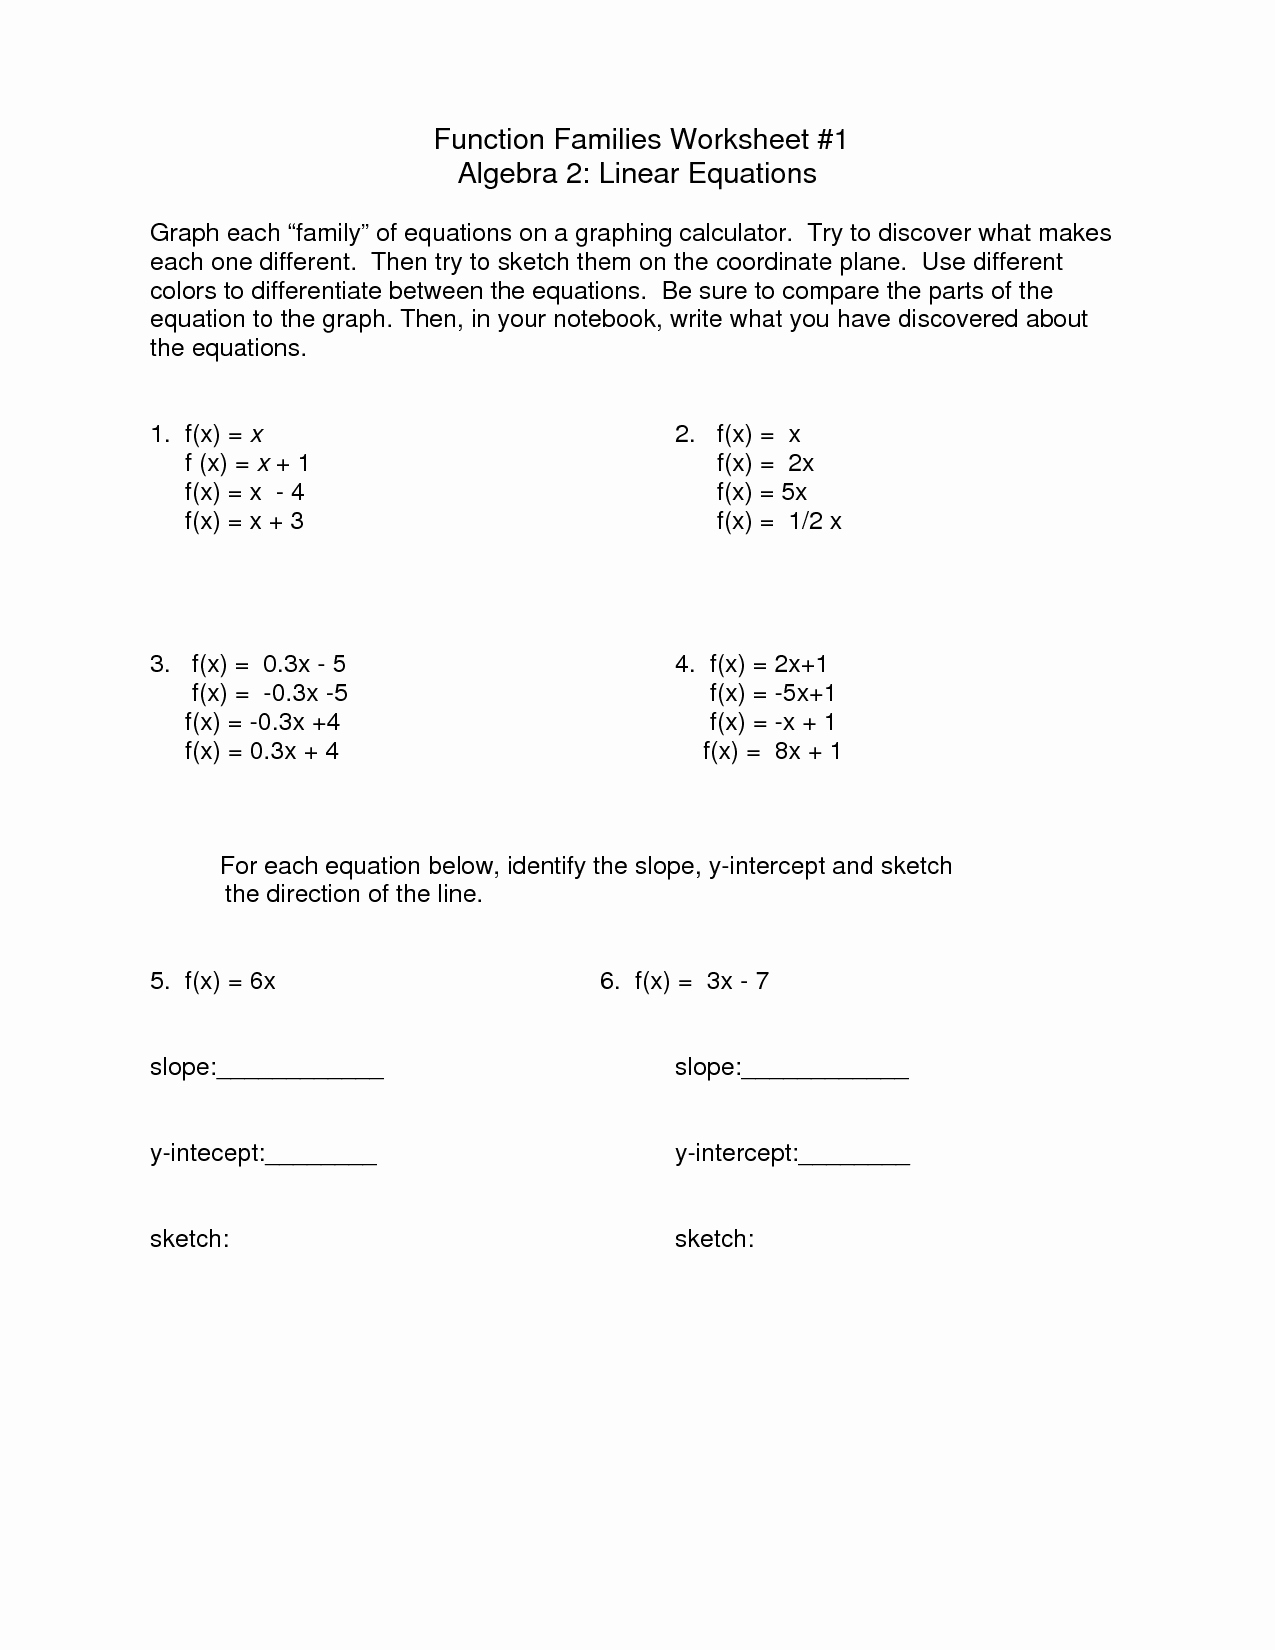 Evaluating Functions Worksheet Algebra 1 Best Of 15 Best Of Evaluating Functions Worksheets Pdf